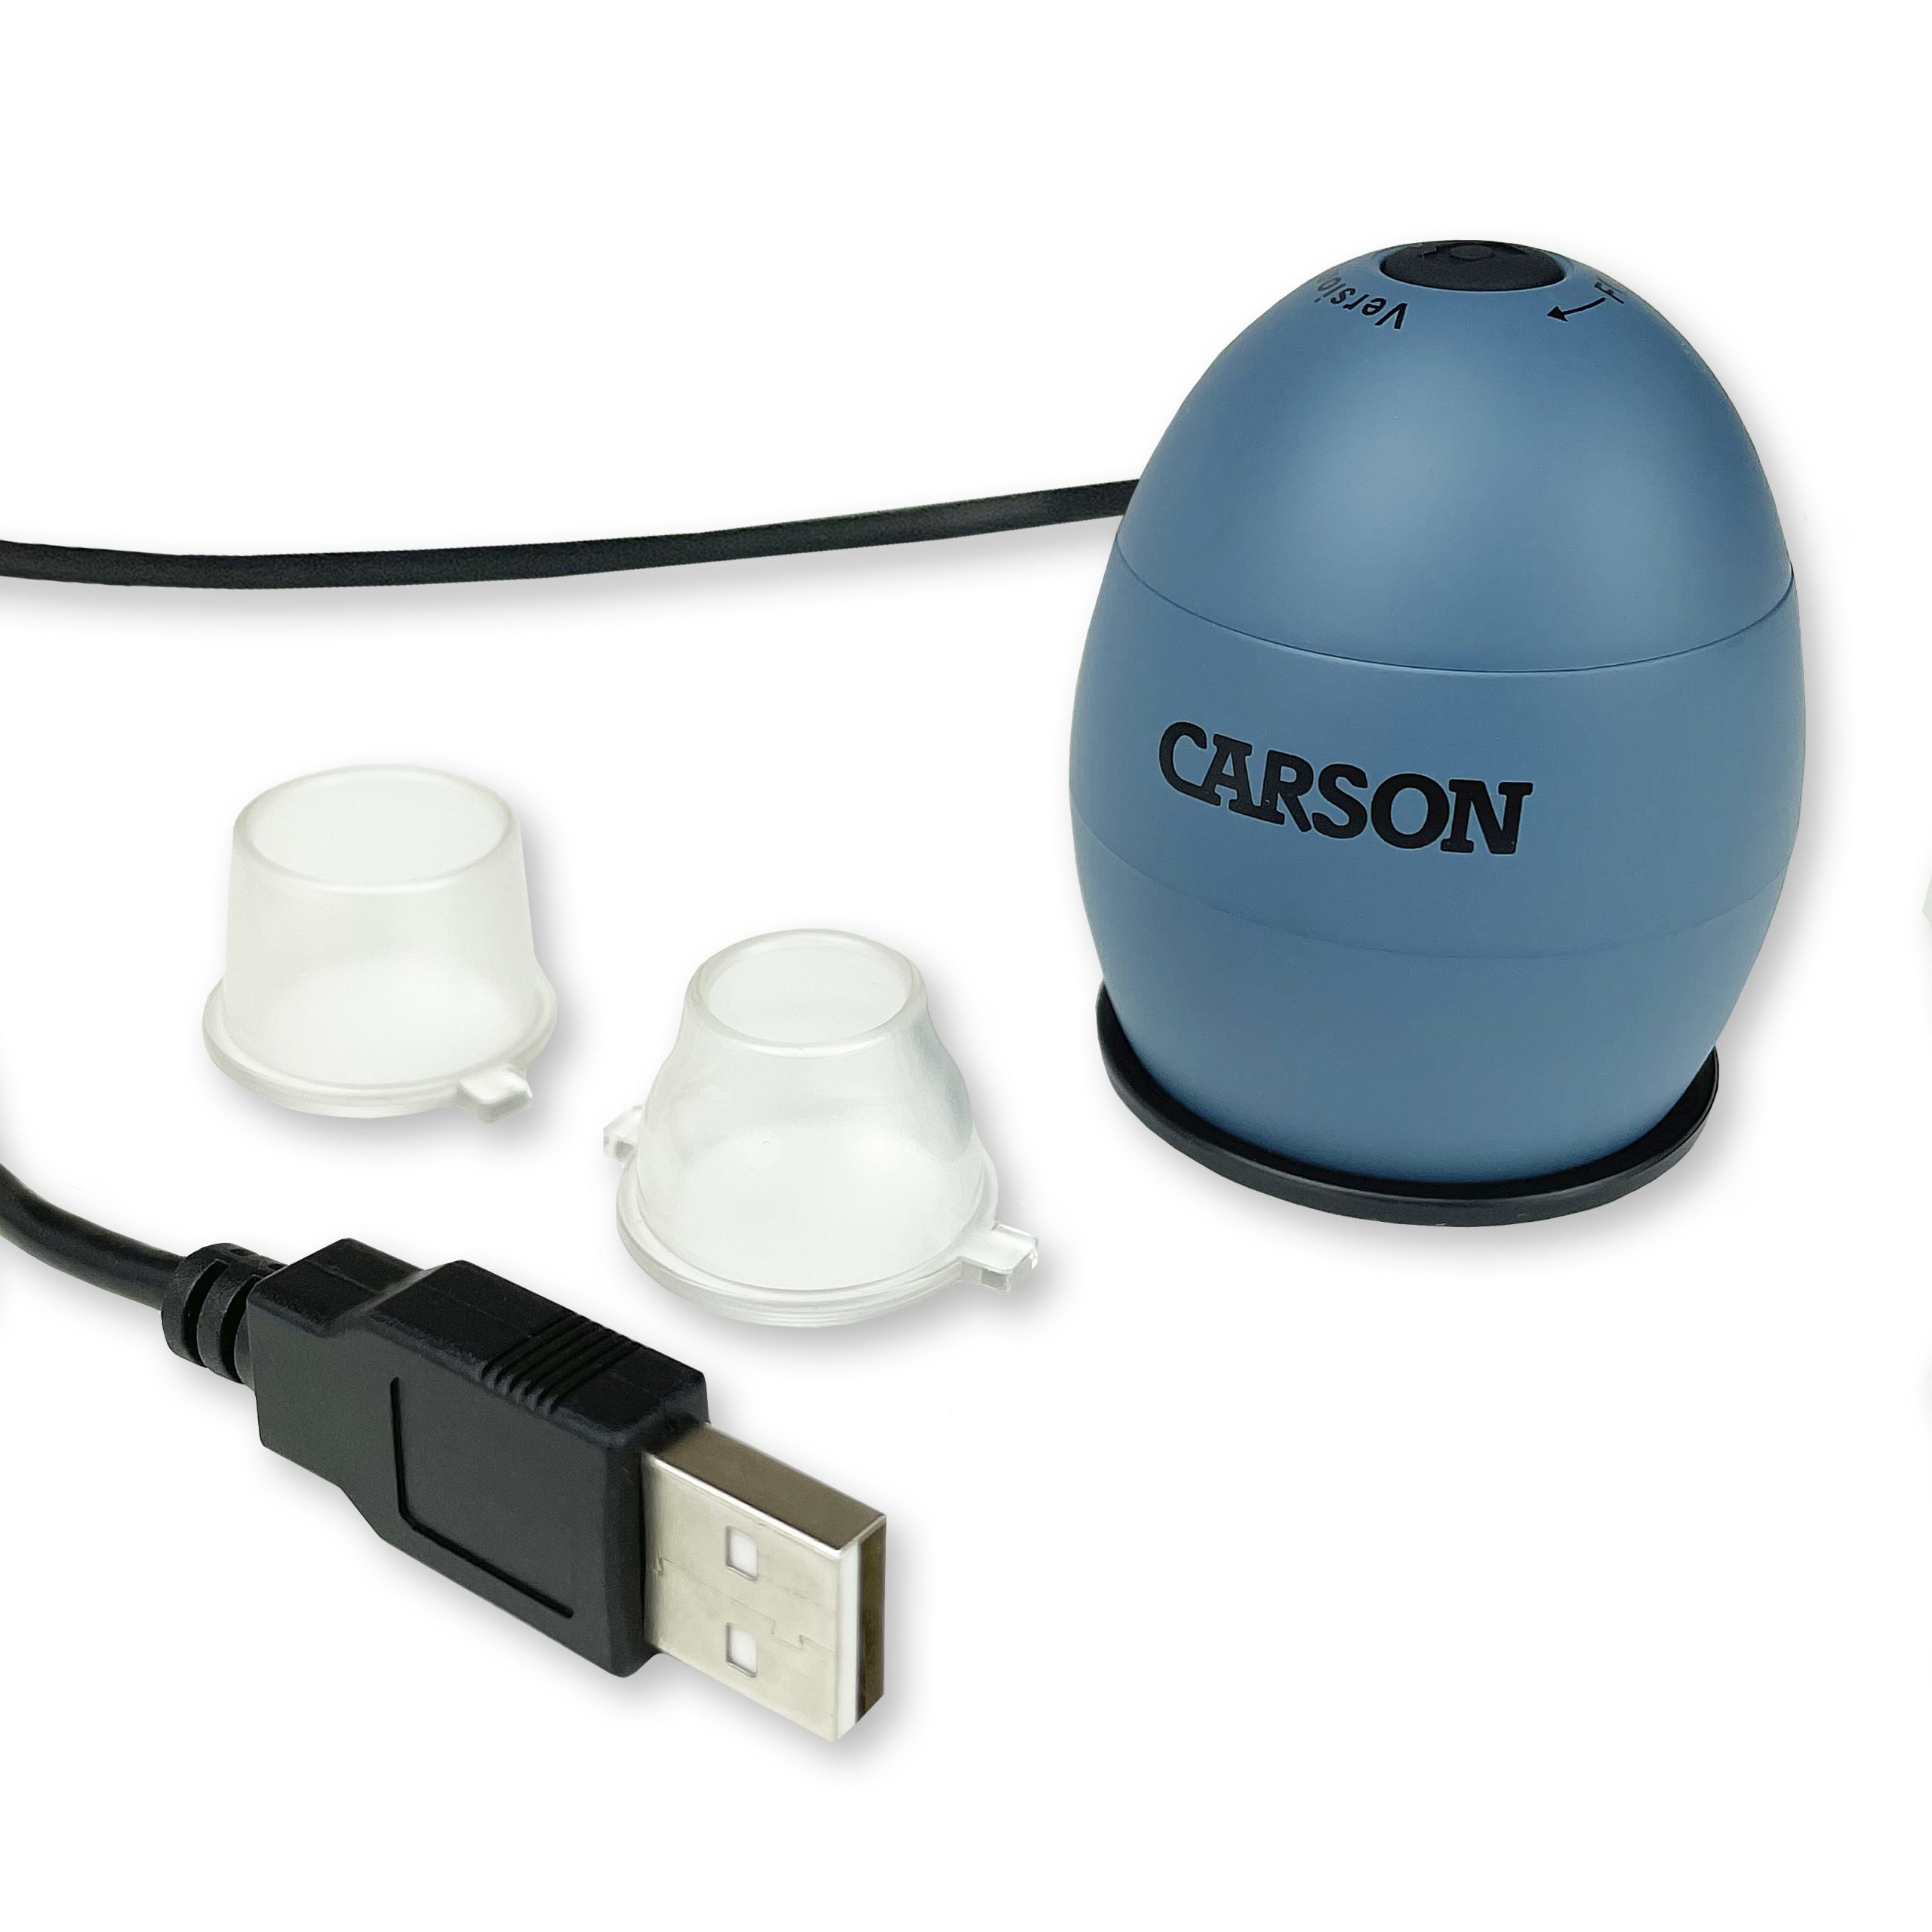 Måler Slapper af levering zOrb™ LED Lighted USB Digital Computer Microscope – Carson Optical